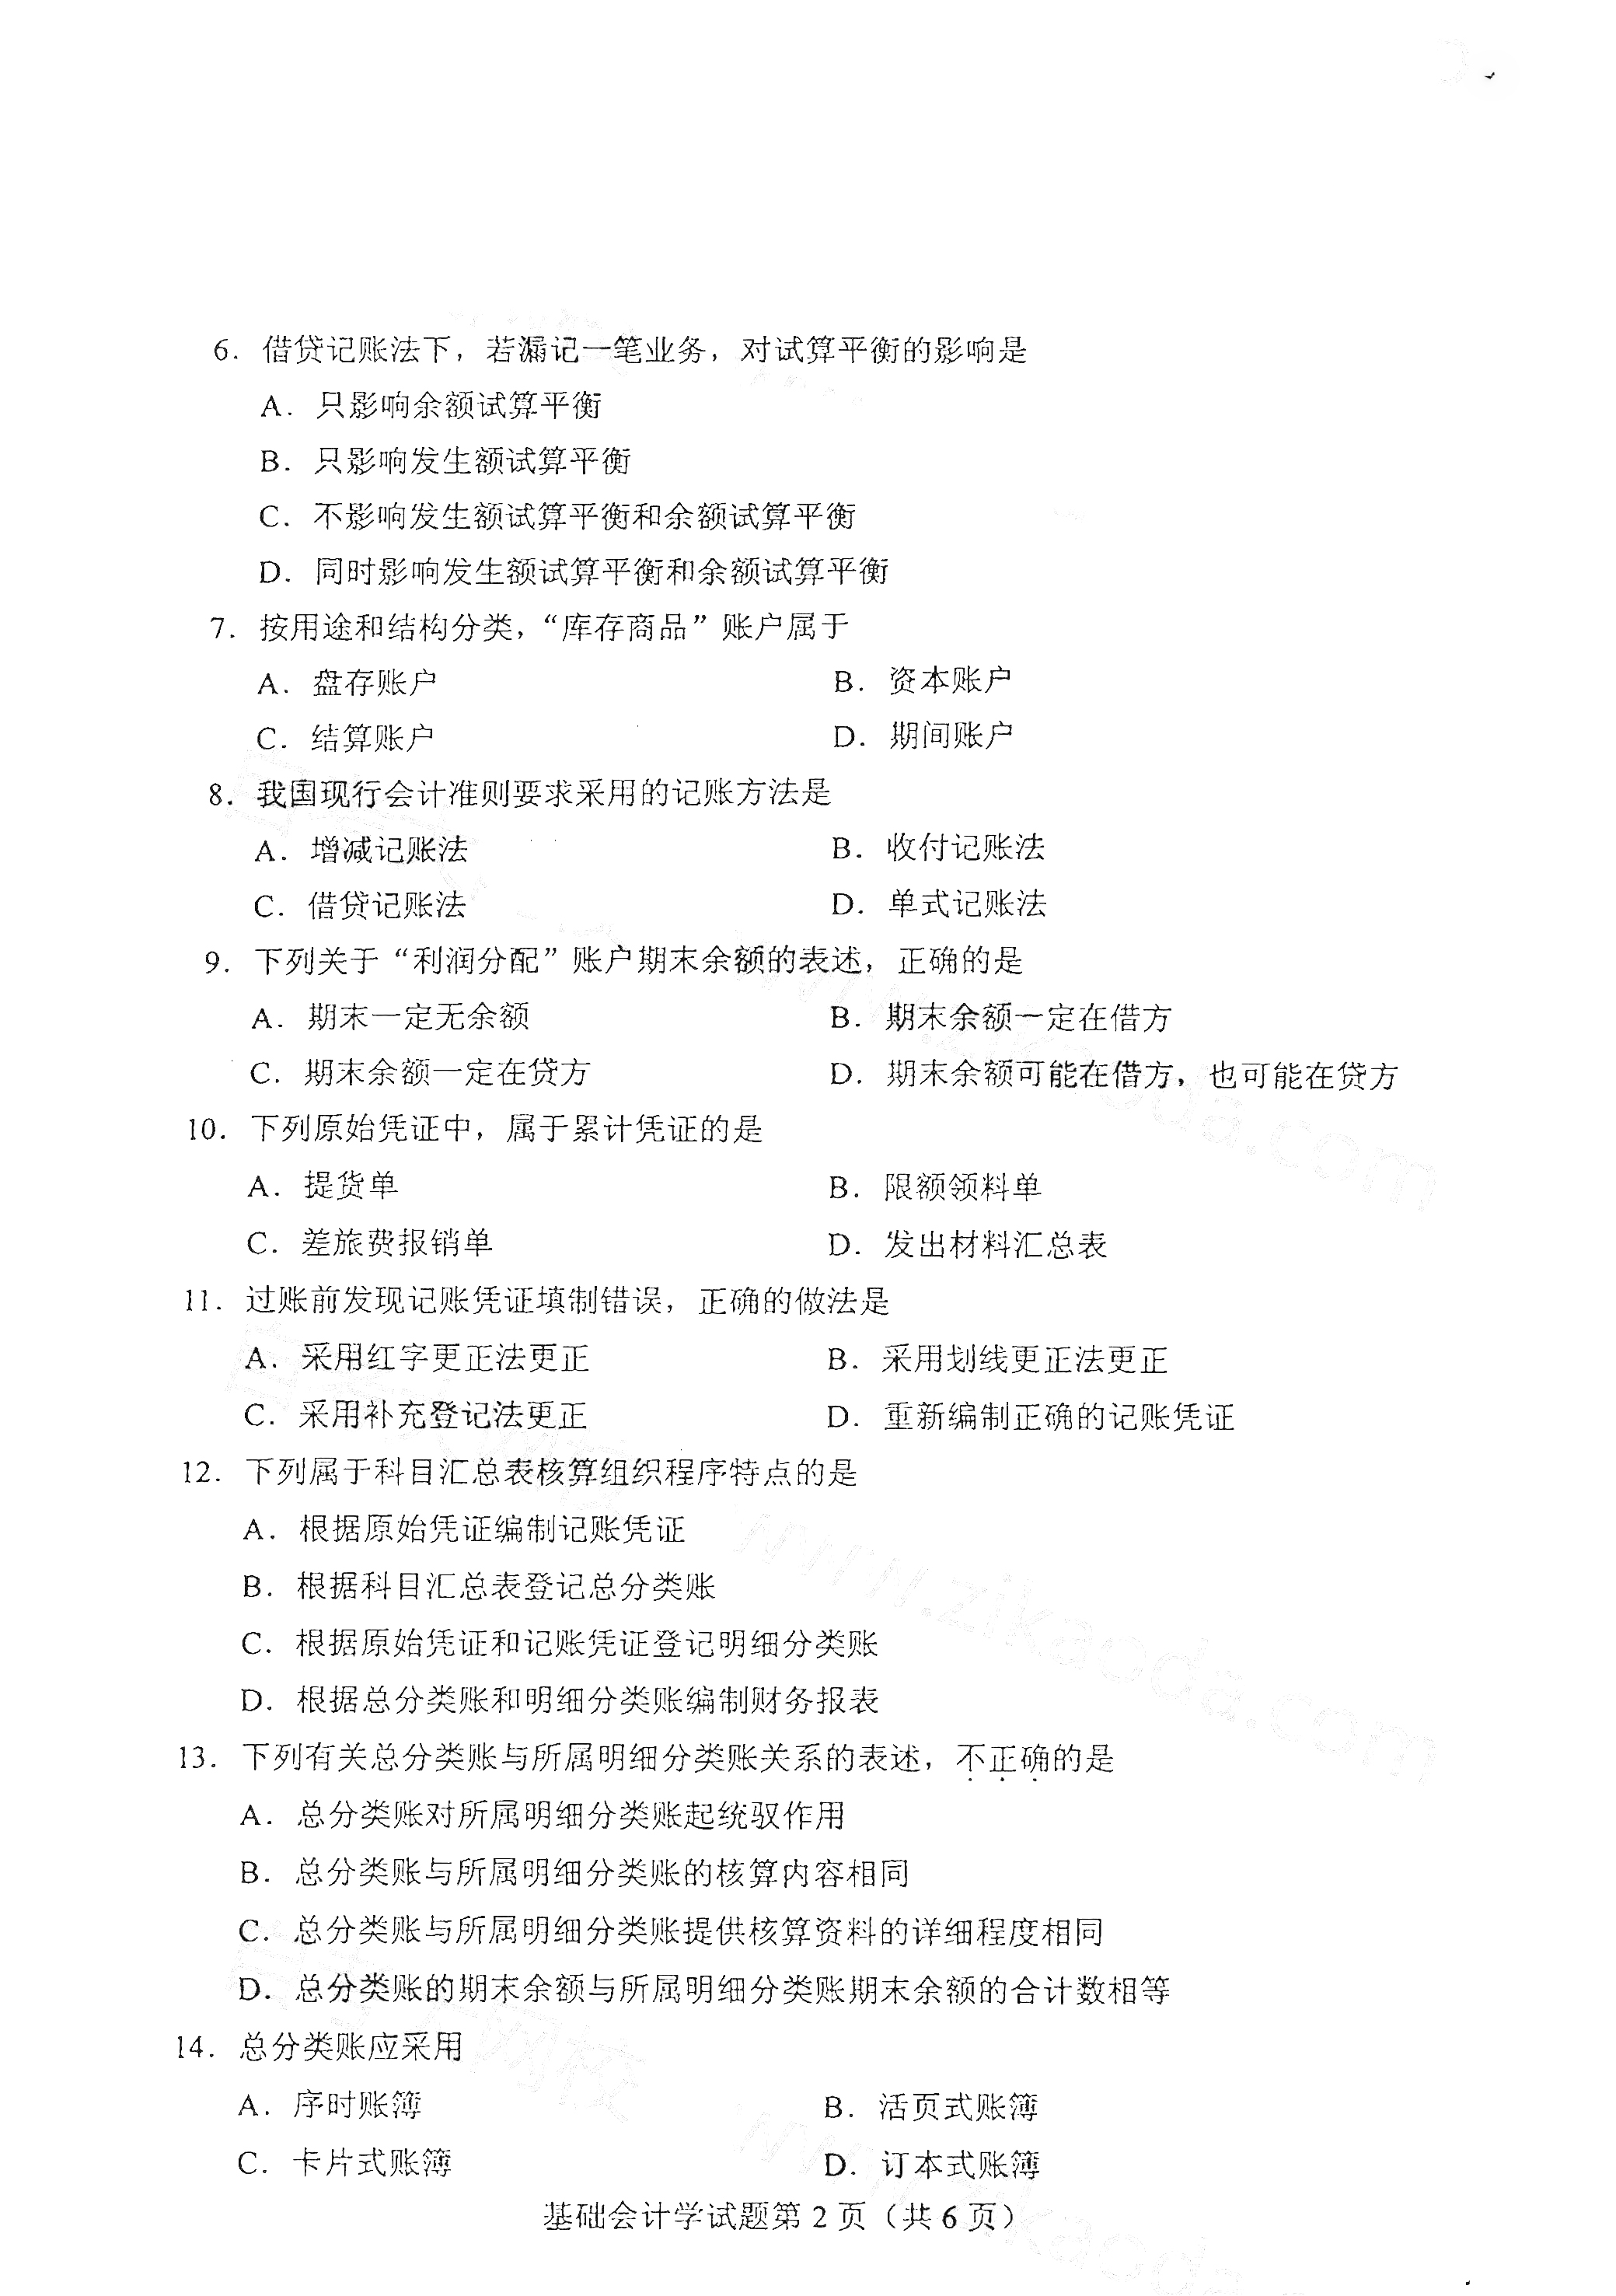 重庆2021年4月自考00041基础会计学真题试卷